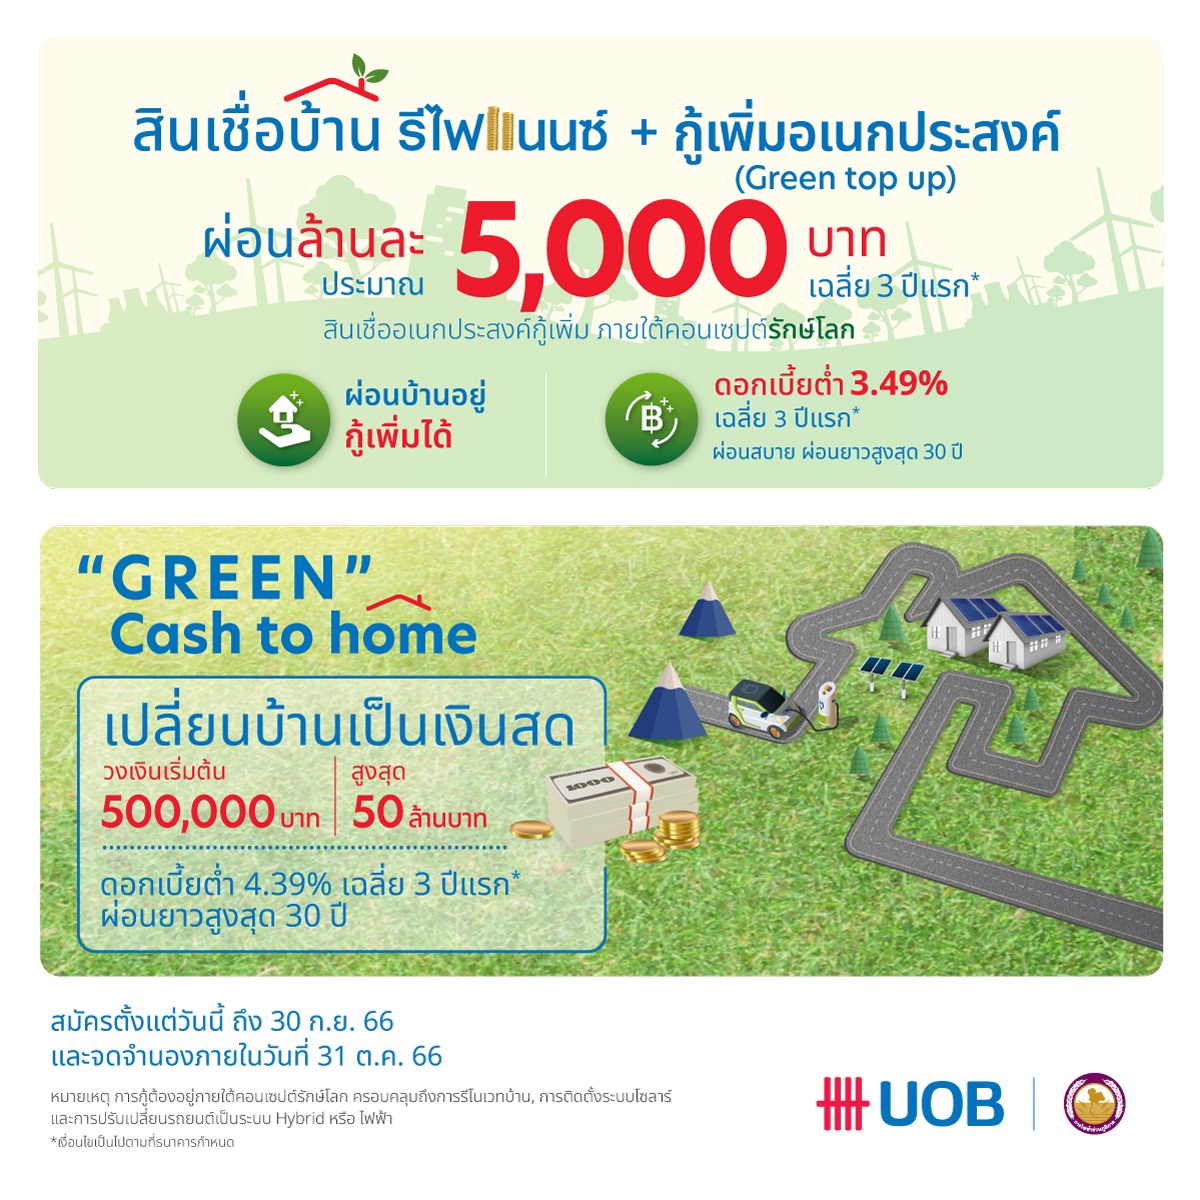 ยูโอบี ประเทศไทย เปิดตัวแคมเปญ U-Green เดินหน้ารุกตลาดสินเชื่อบ้านภายใต้คอนเซ็ปต์รักษ์โลก